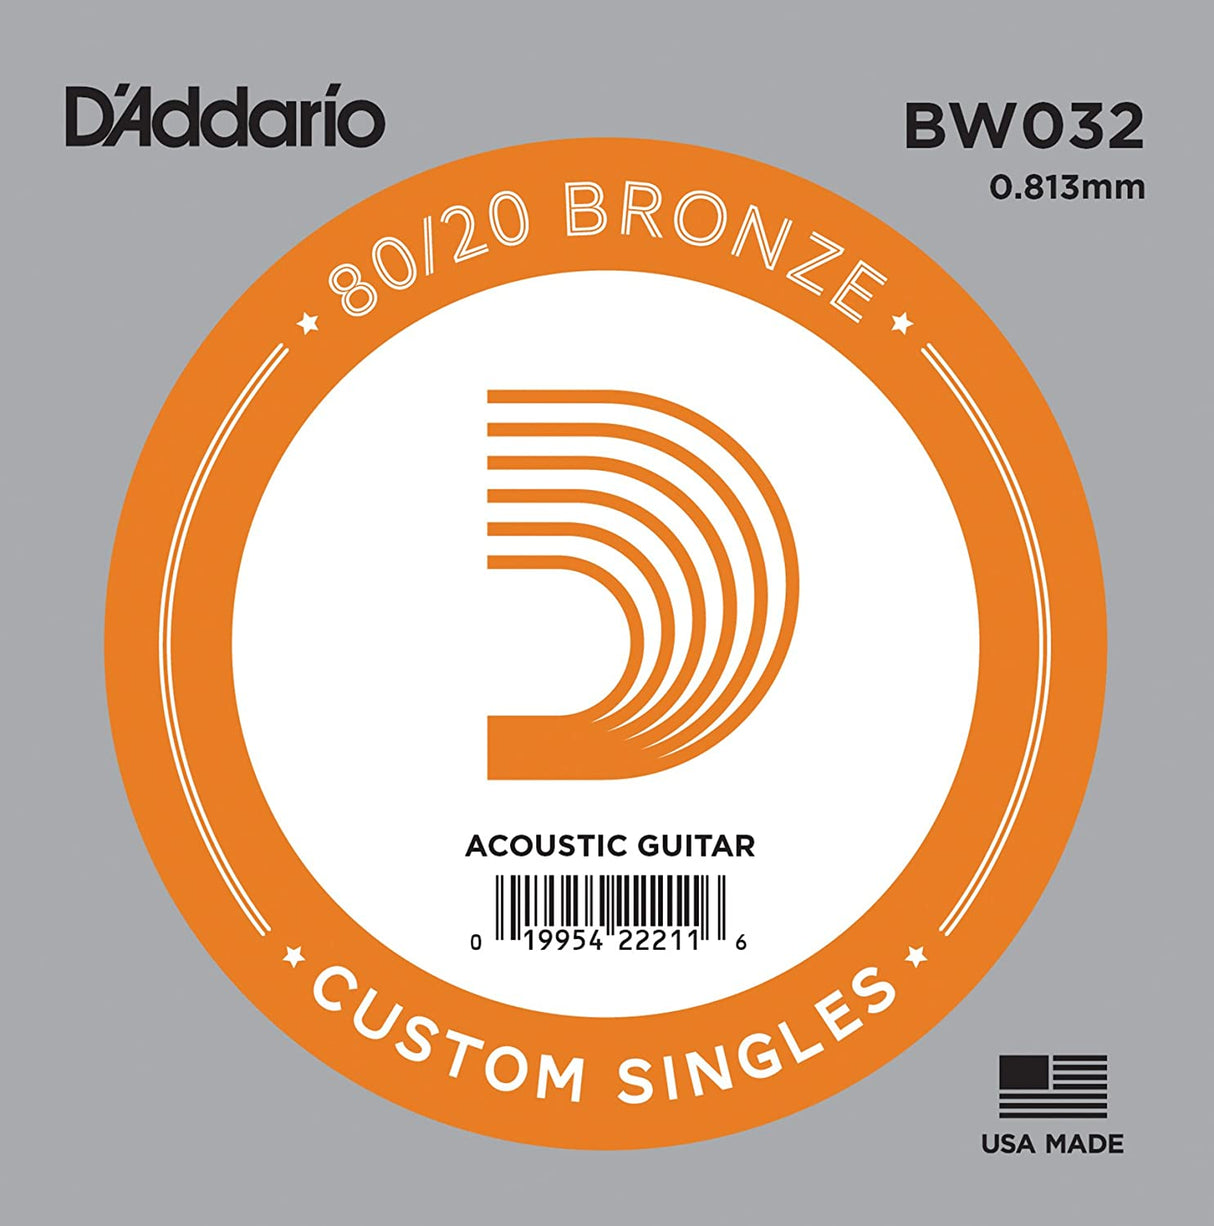 D'Addario Bronze Einzelsaite für Gitarre 80/20 Bronze Round Wound - Musik-Ebert Gmbh